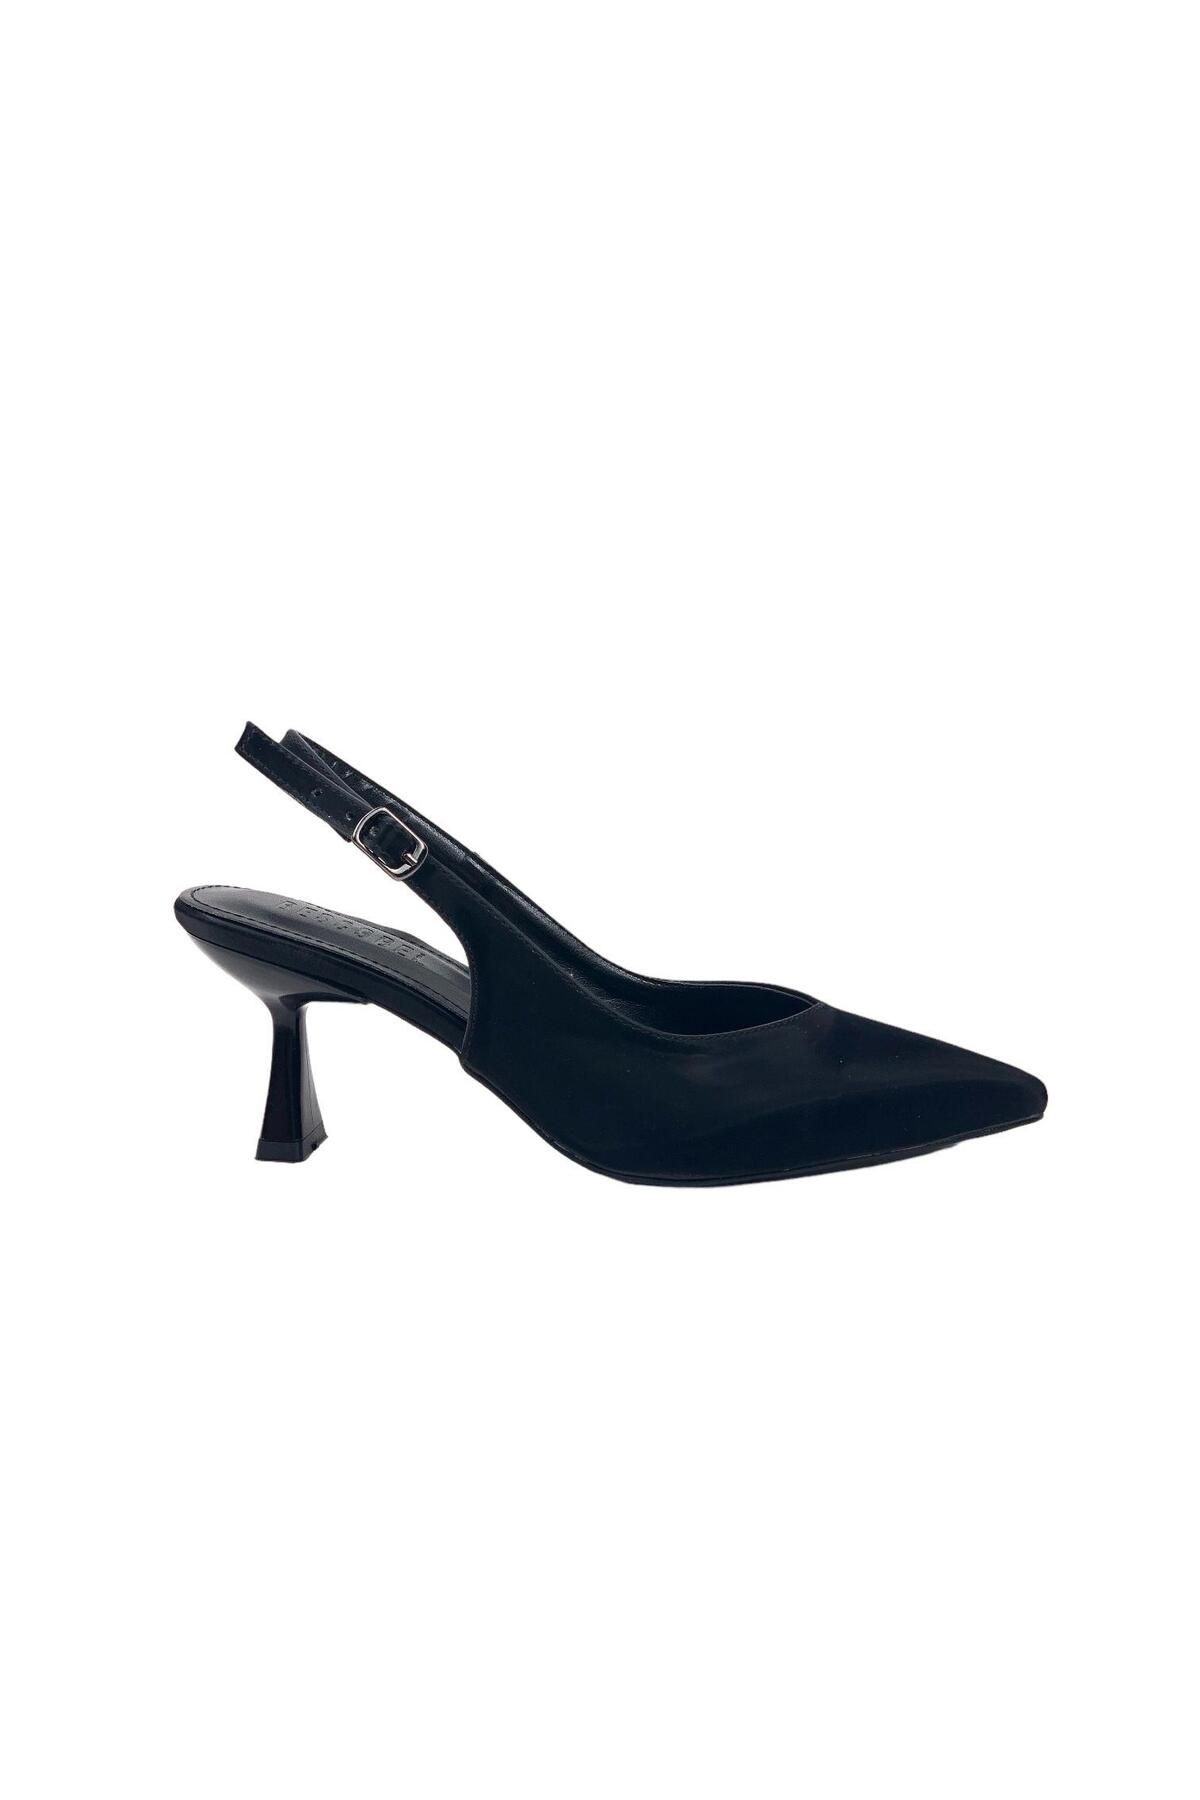 bescobel Kadın Pasge Siyah İpek Malzeme Sivri Burun Topuklu Sandalet 6 Cm 4114